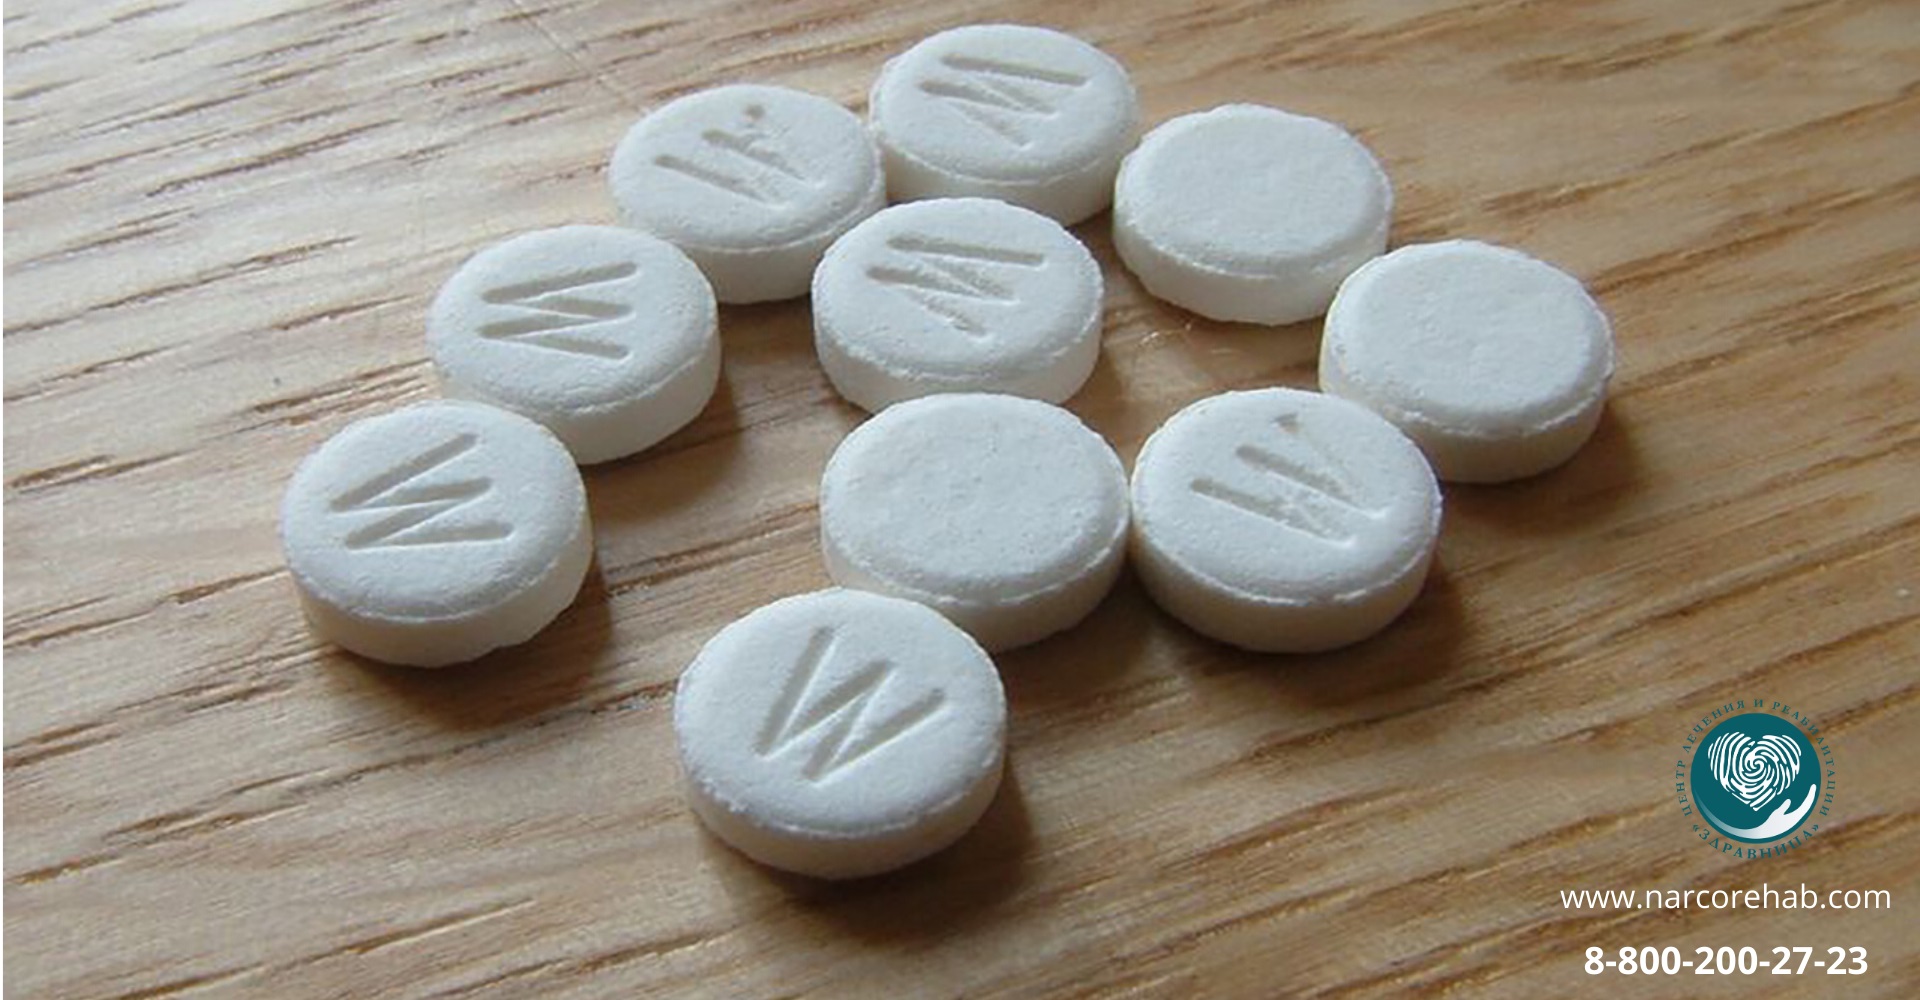 Является ли эфедрин наркотиком служба от наркотиков